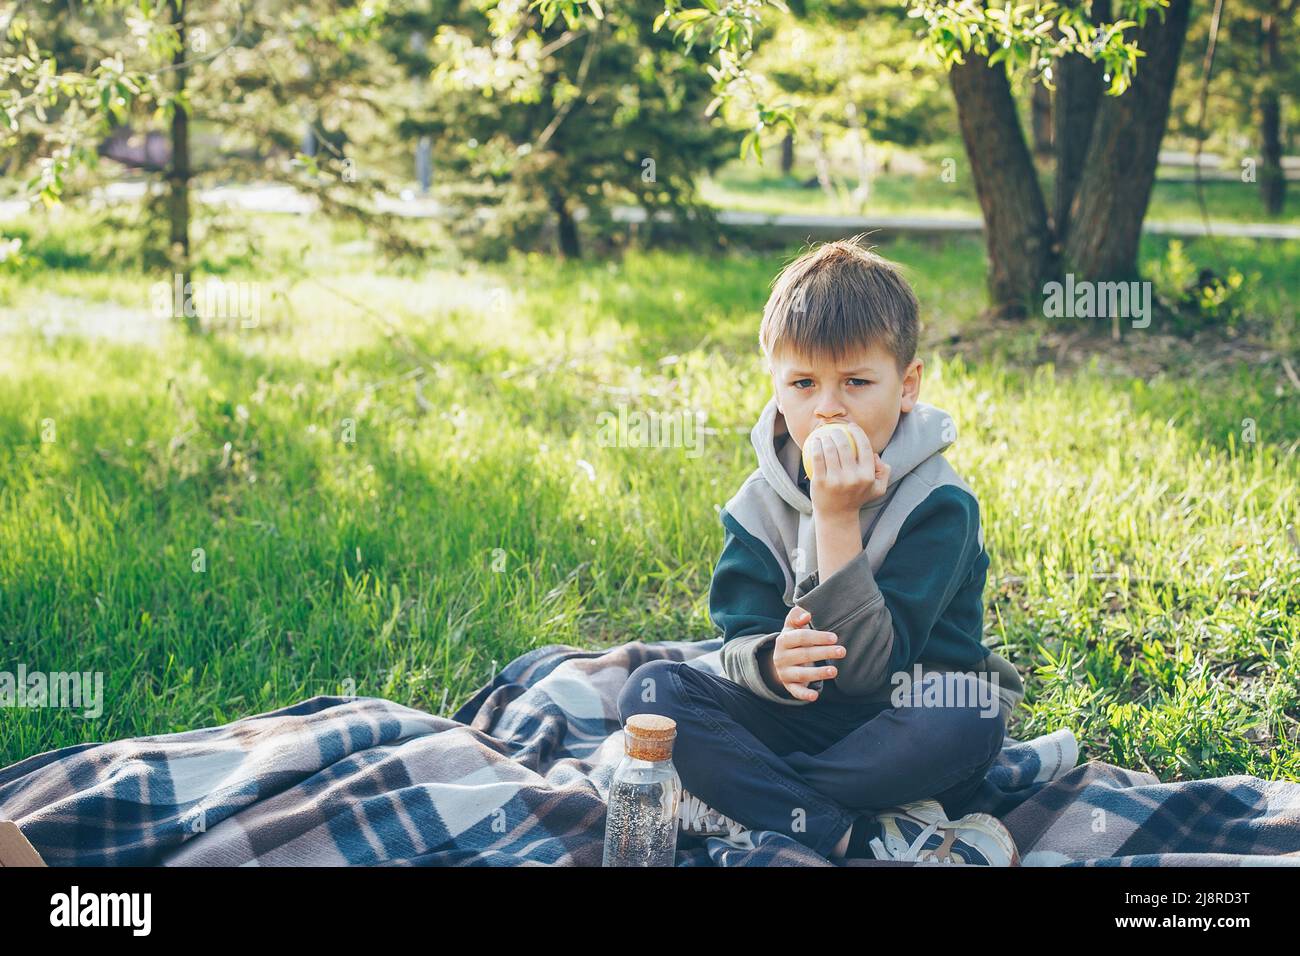 Garçon de 7-8 ans assis sur un plat et mangeant de la pomme. Concept de pique-nique de printemps ou d'été. Banque D'Images